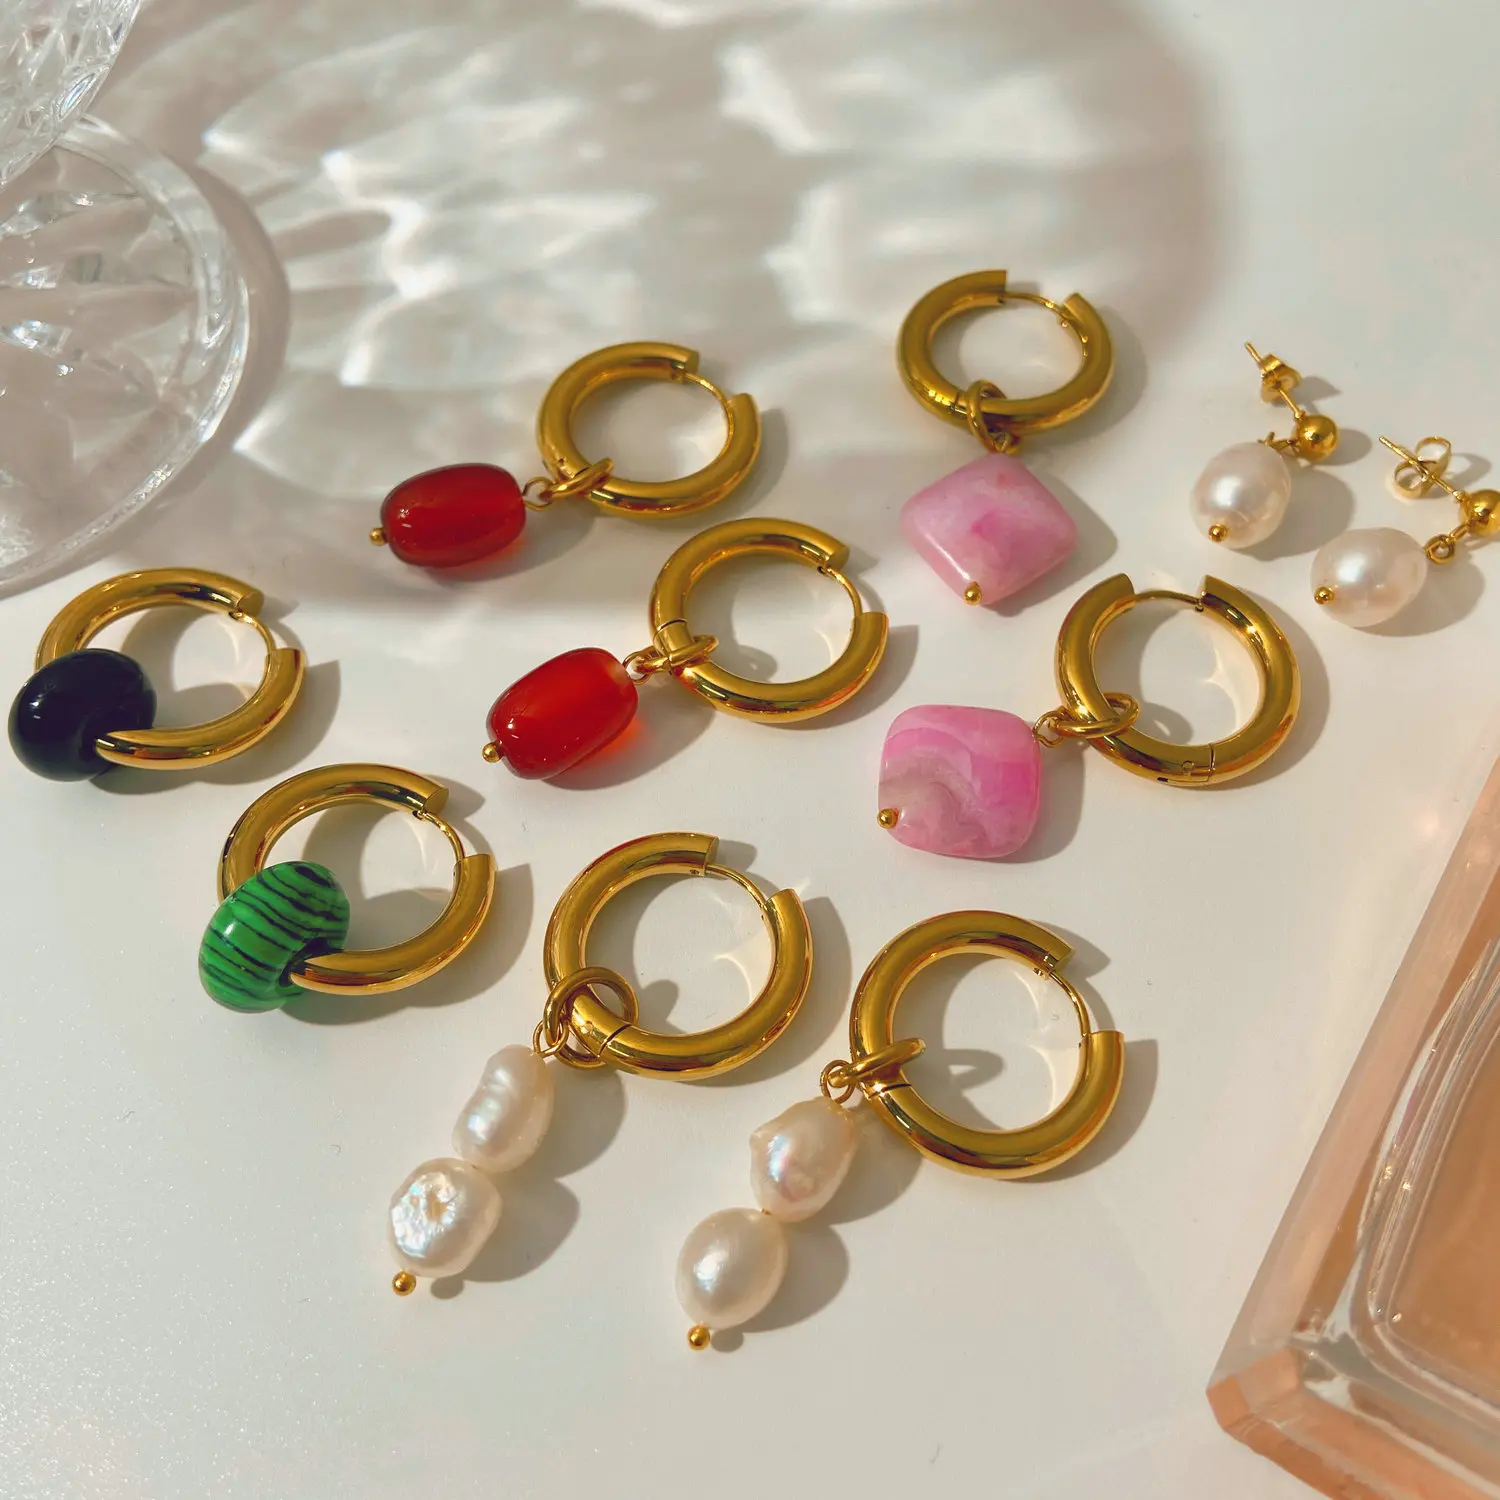 

18k Gold PVD Plated Stainless Steel Hoop Earrings Freshwater Pearl Opal Red Agate CARNELIAN Crystal Charm Huggie Earrings